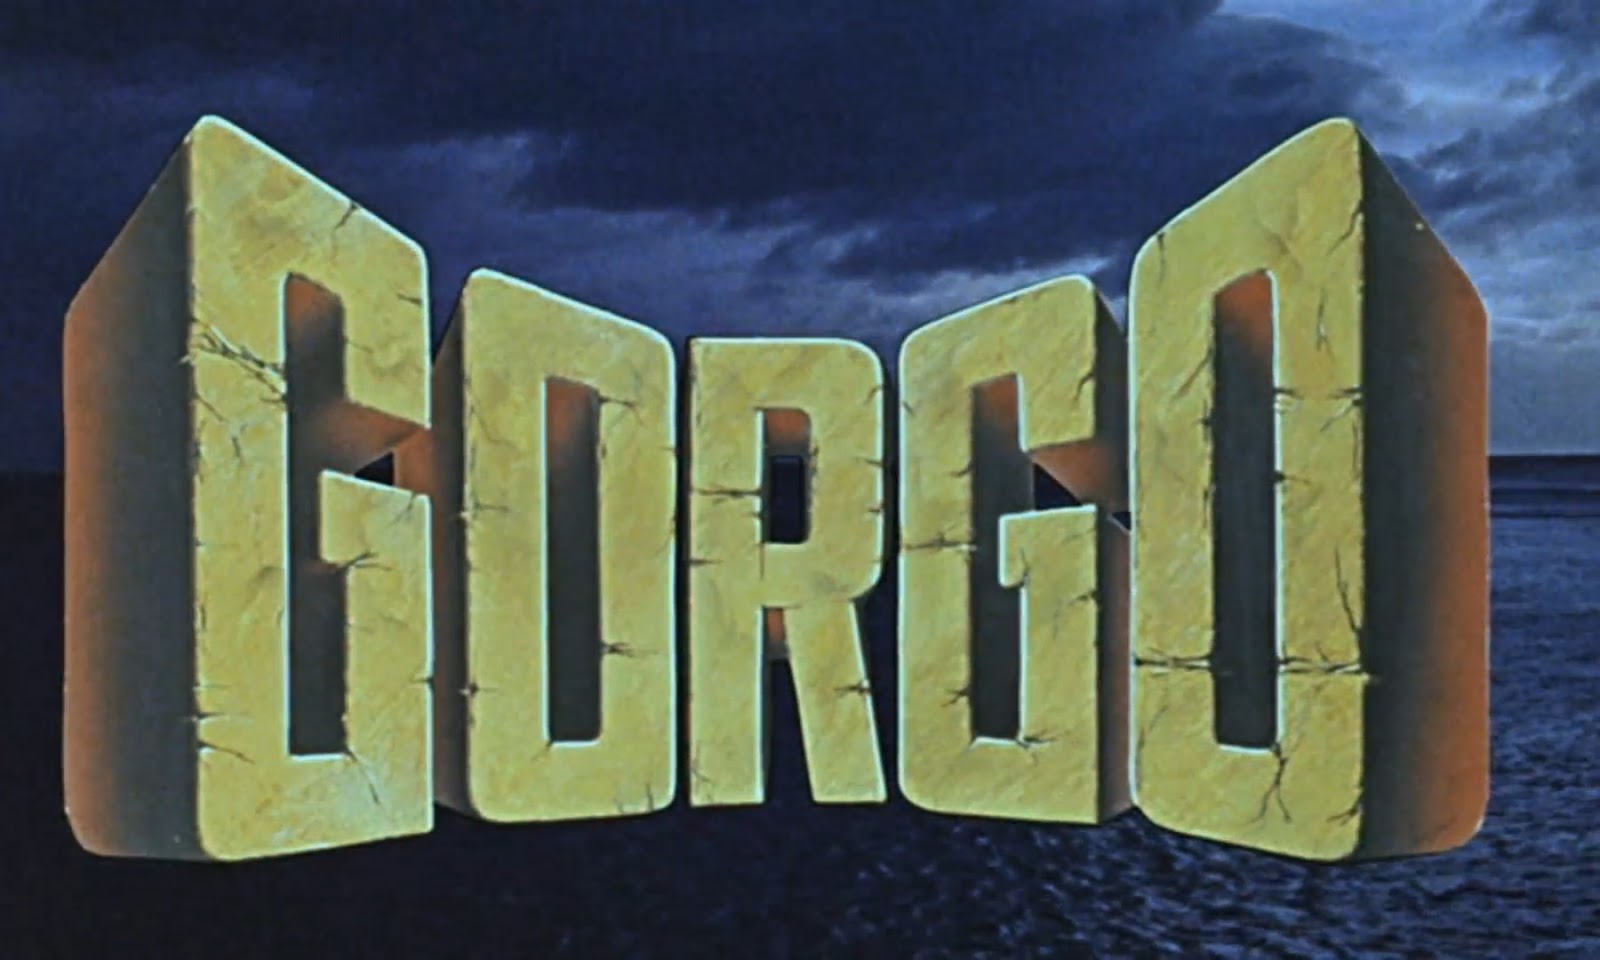 Gorgo (1961)|1080p|Mega|cine de mounstro